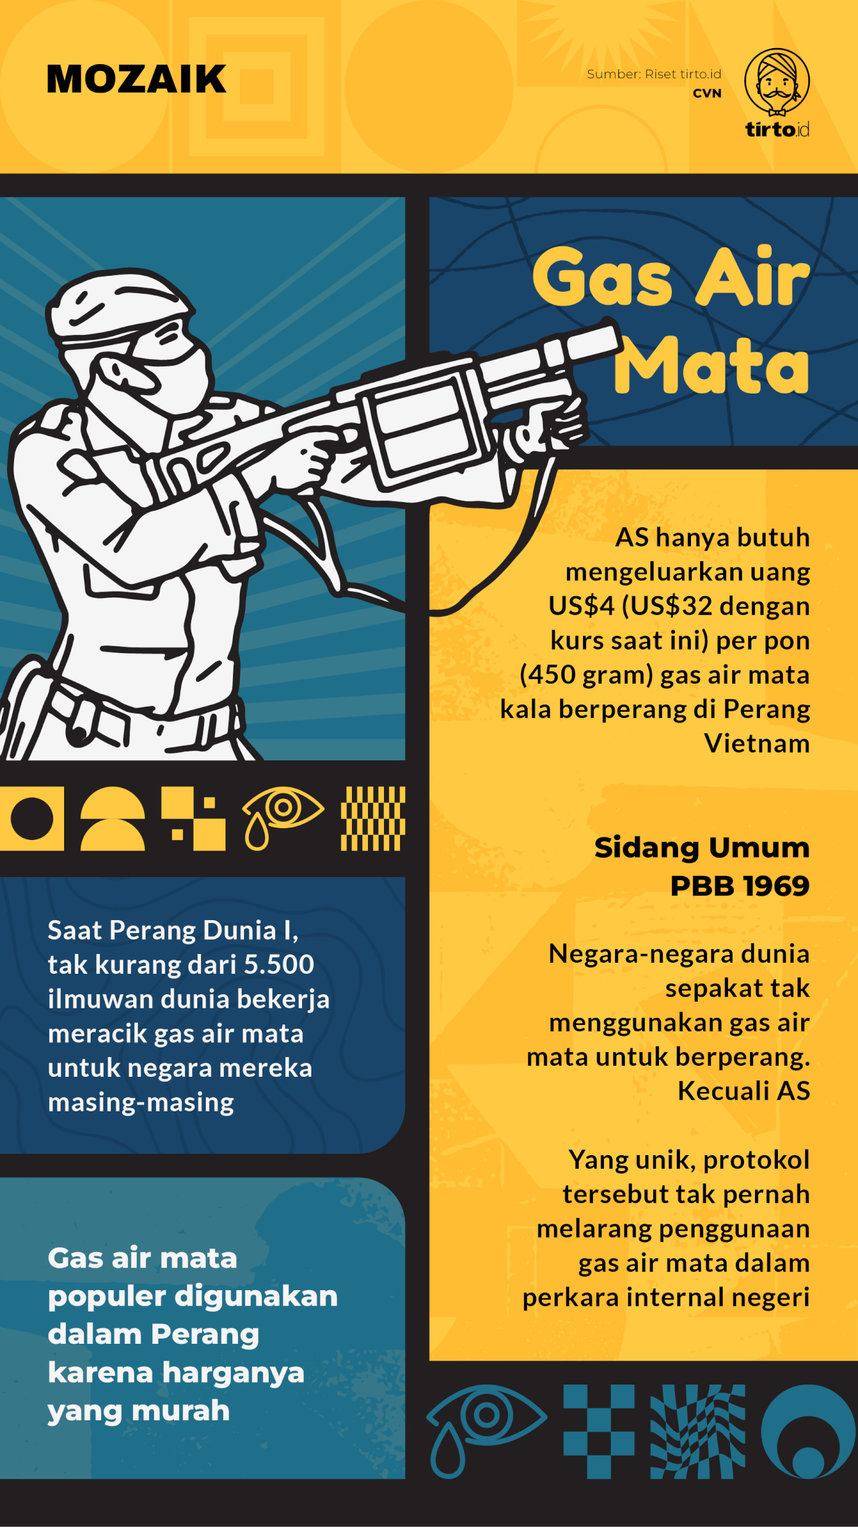 Infografik Mozaik Gas Air Mata